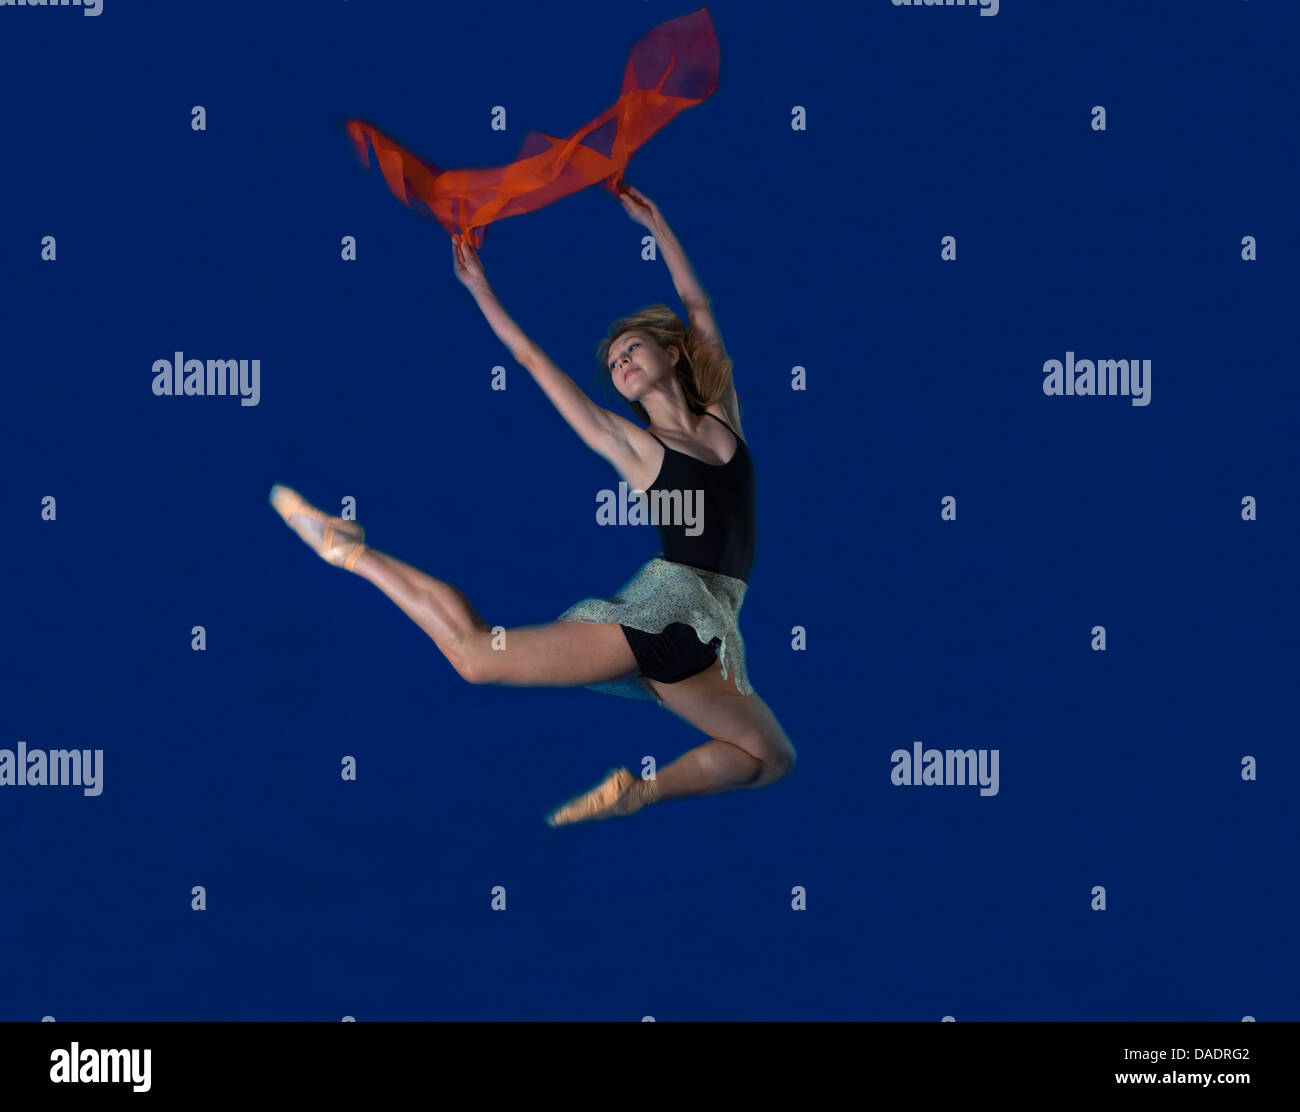 Jeune danseuse jumping mid air avec l'écharpe rouge Banque D'Images